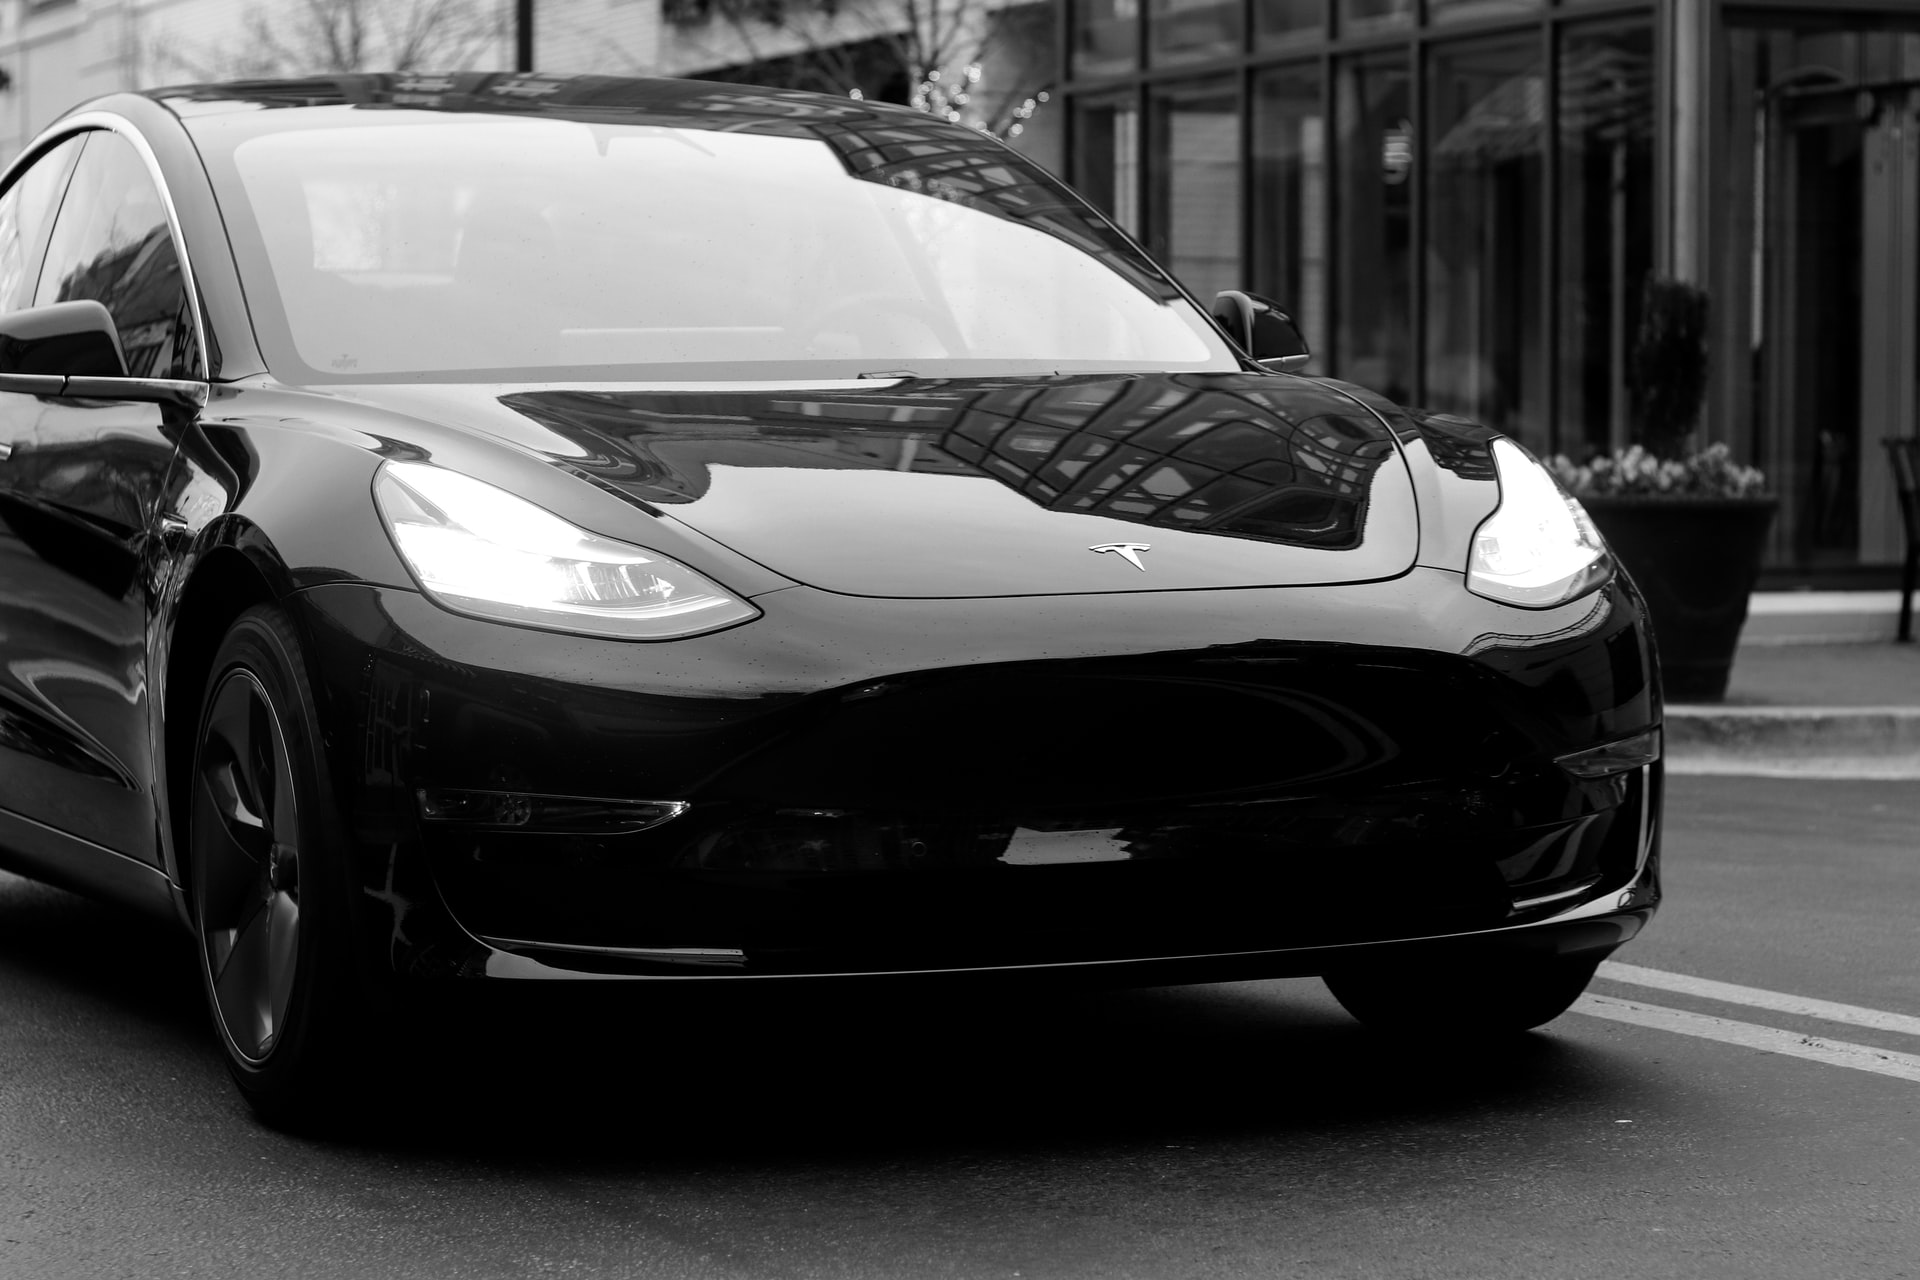 ၂၀၂၁ ခုနှစ်အတွင်းတွင် Tesla မှ လျှပ်စစ်ကားအစီးရေ ၁ သန်းခန့်ကို ထုတ်လုပ်ရောင်းချနိုင်ခဲ့ကြောင်း ကြေငြာချက်ထုတ်ပြန်